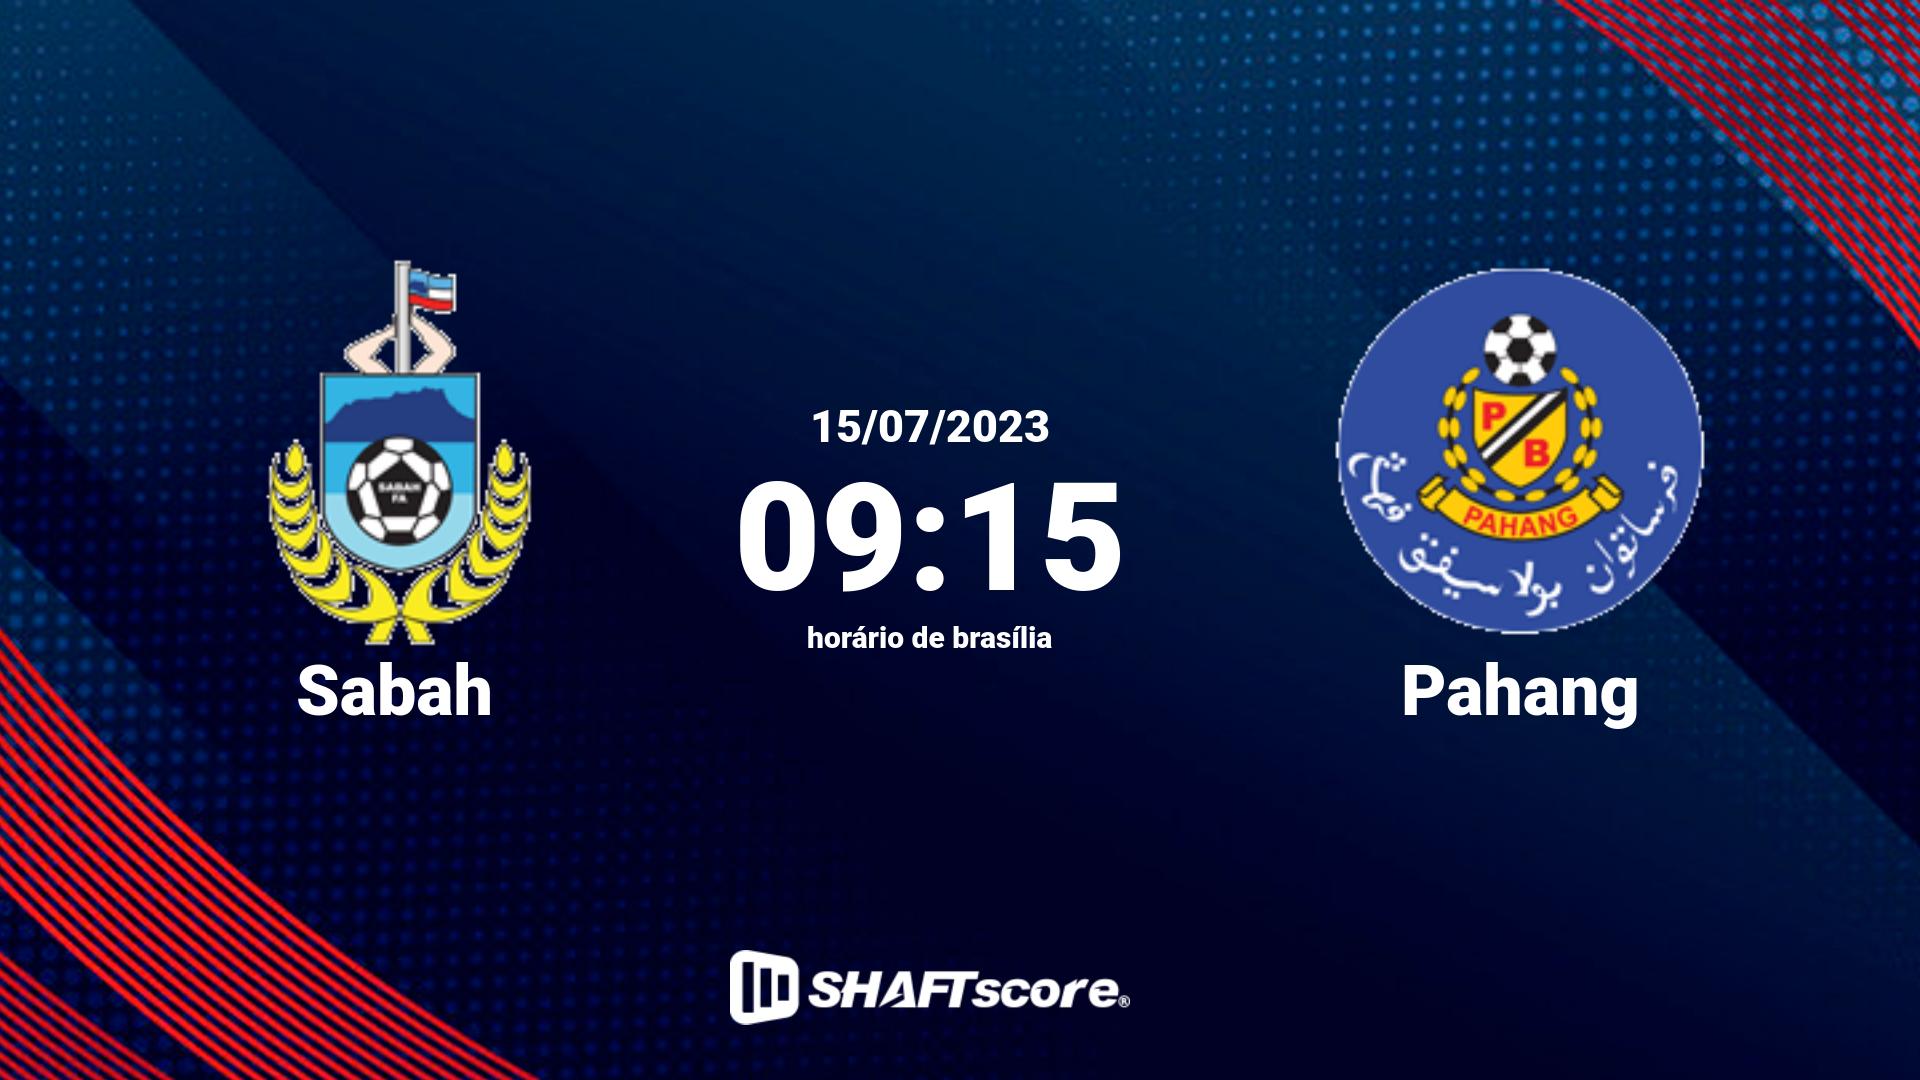 Estatísticas do jogo Sabah vs Pahang 15.07 09:15